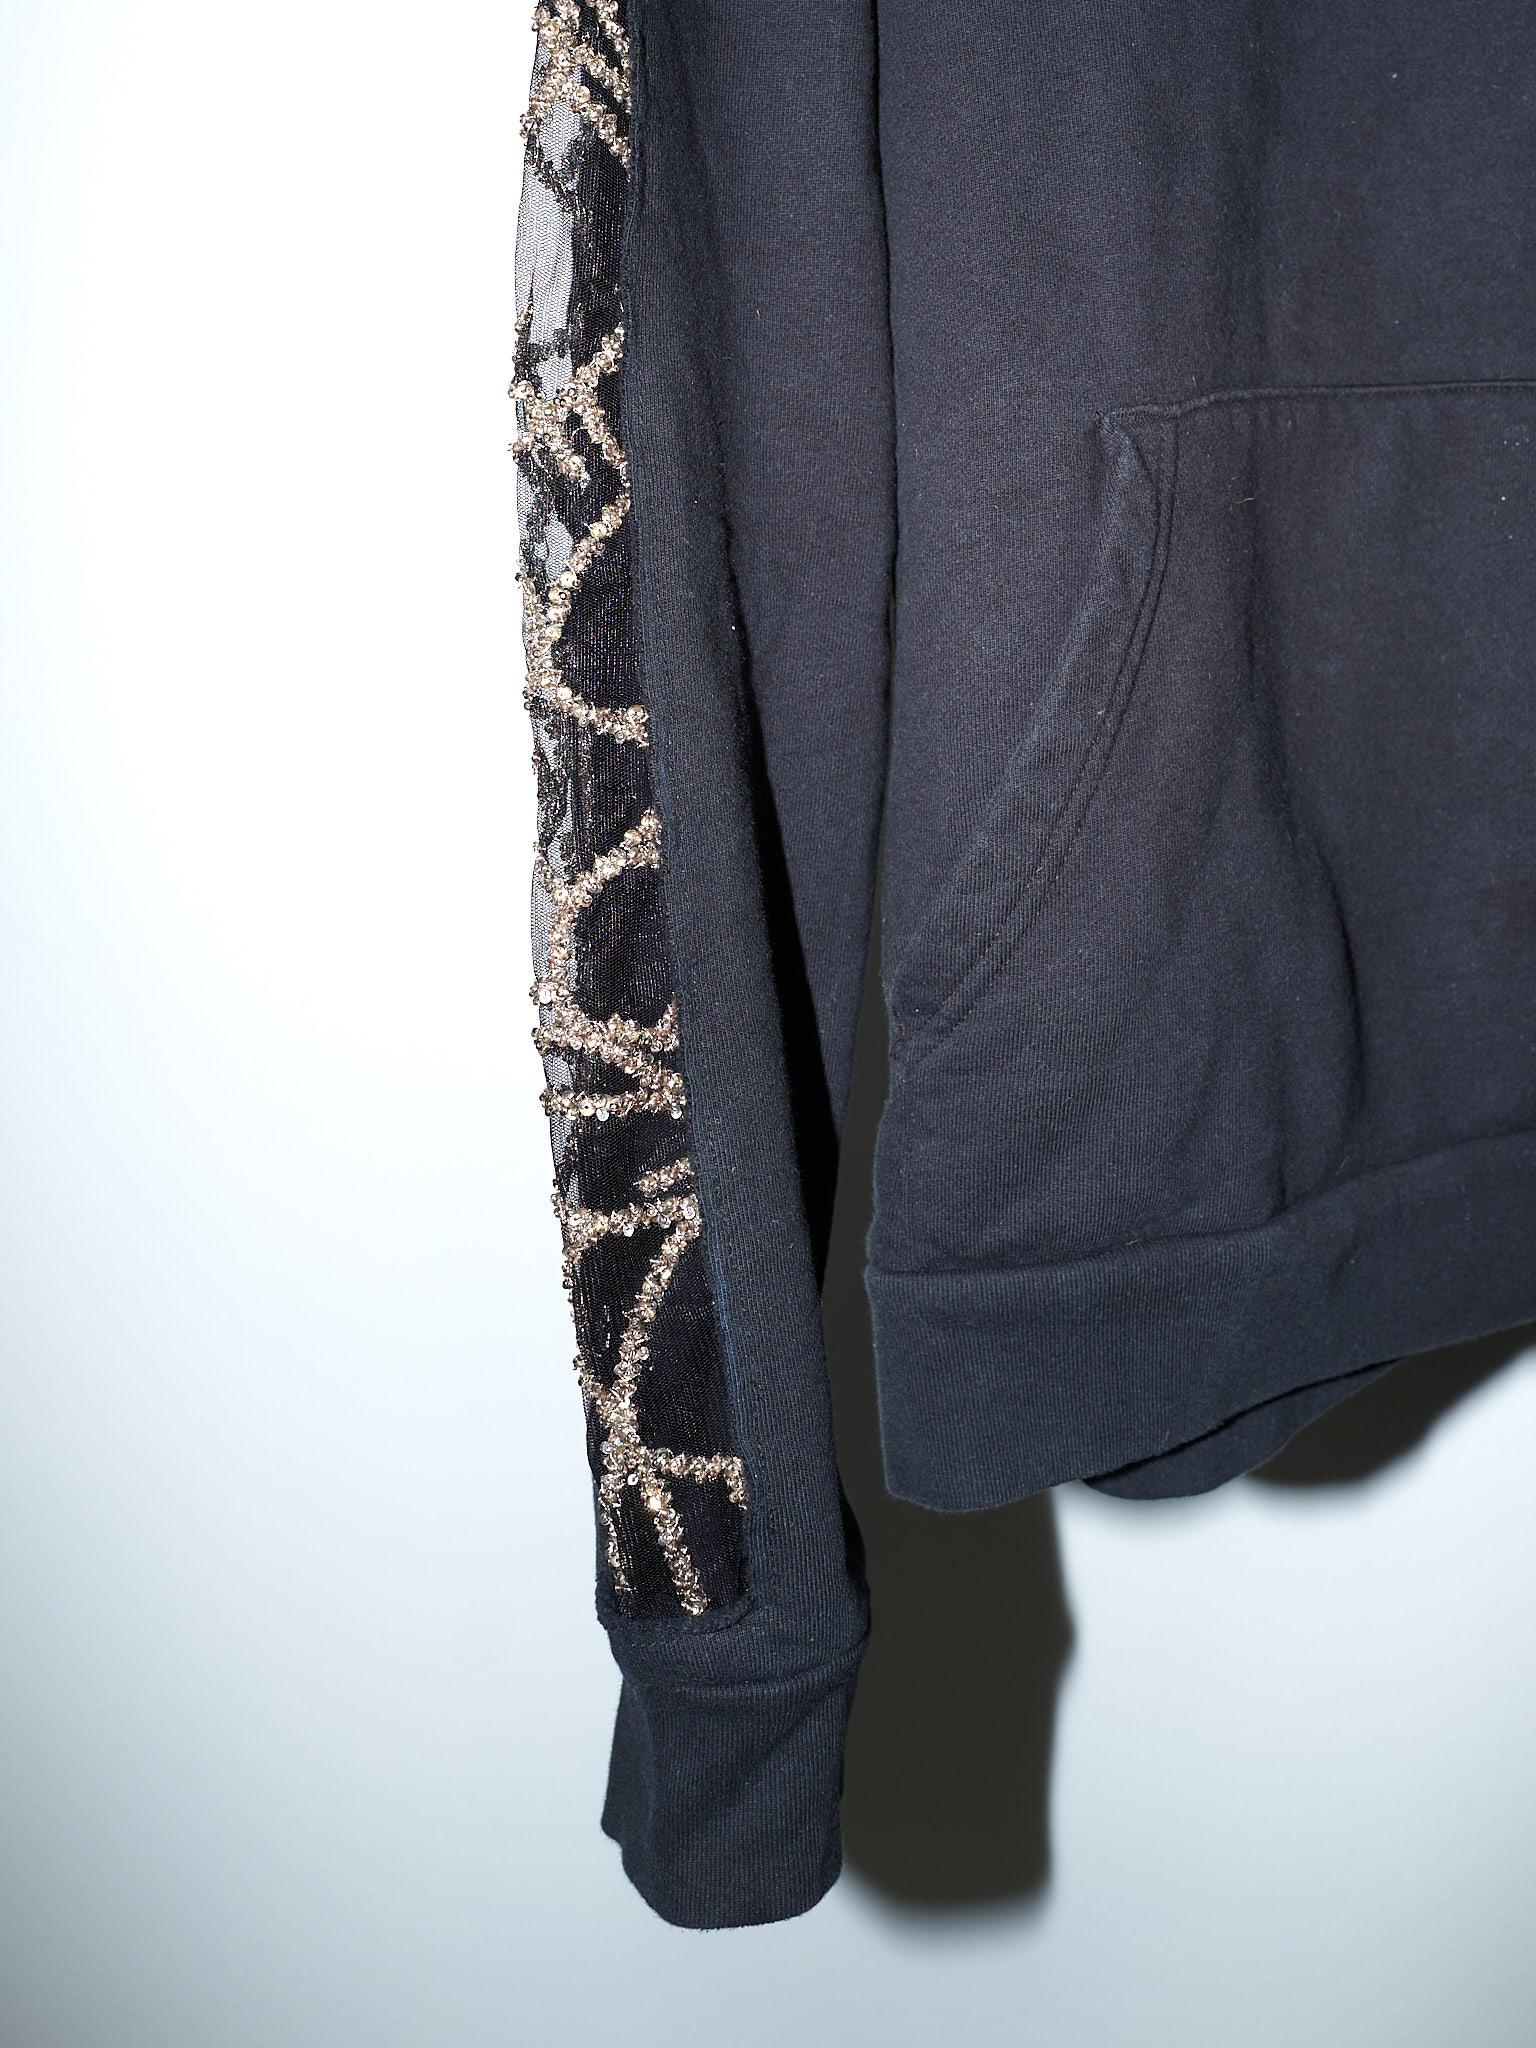 Women's Black Hoodie Sweatshirt Transparent Sheer Mesh Chrystal Embroidery J Dauphin